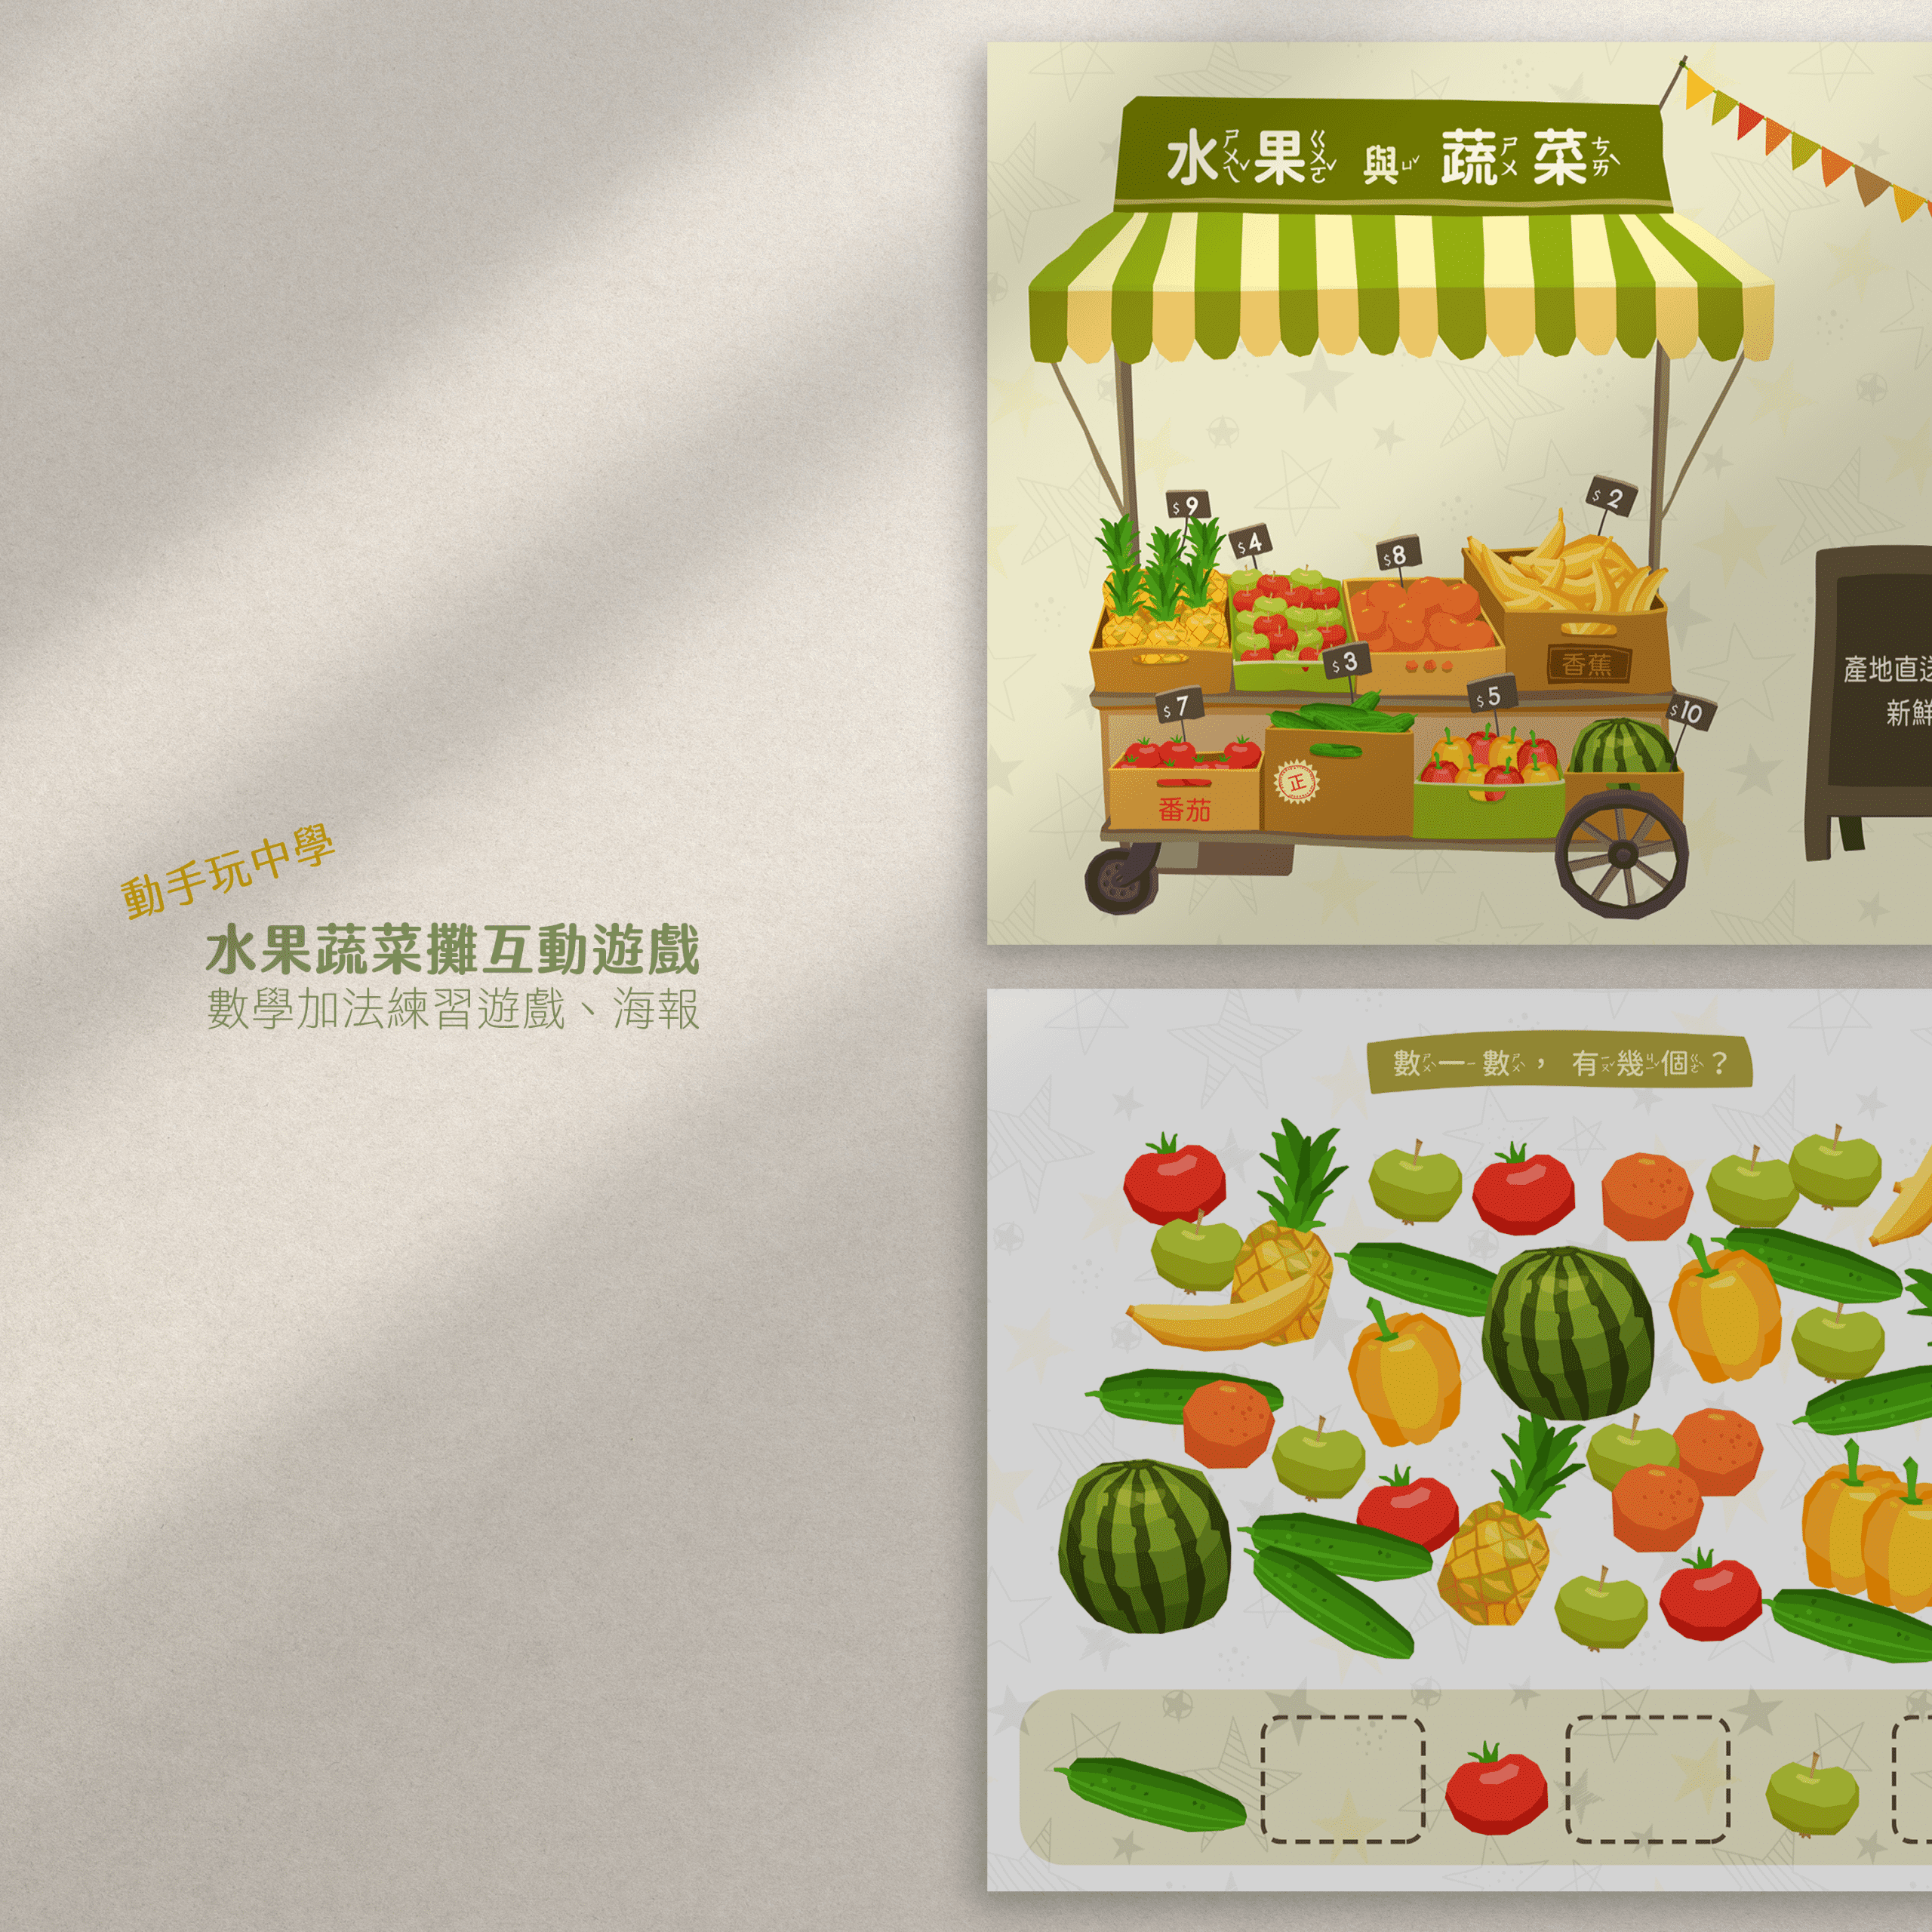 DIY 玩貼紙學中文 早餐食物組 2 種玩法（圖檔分享） 2